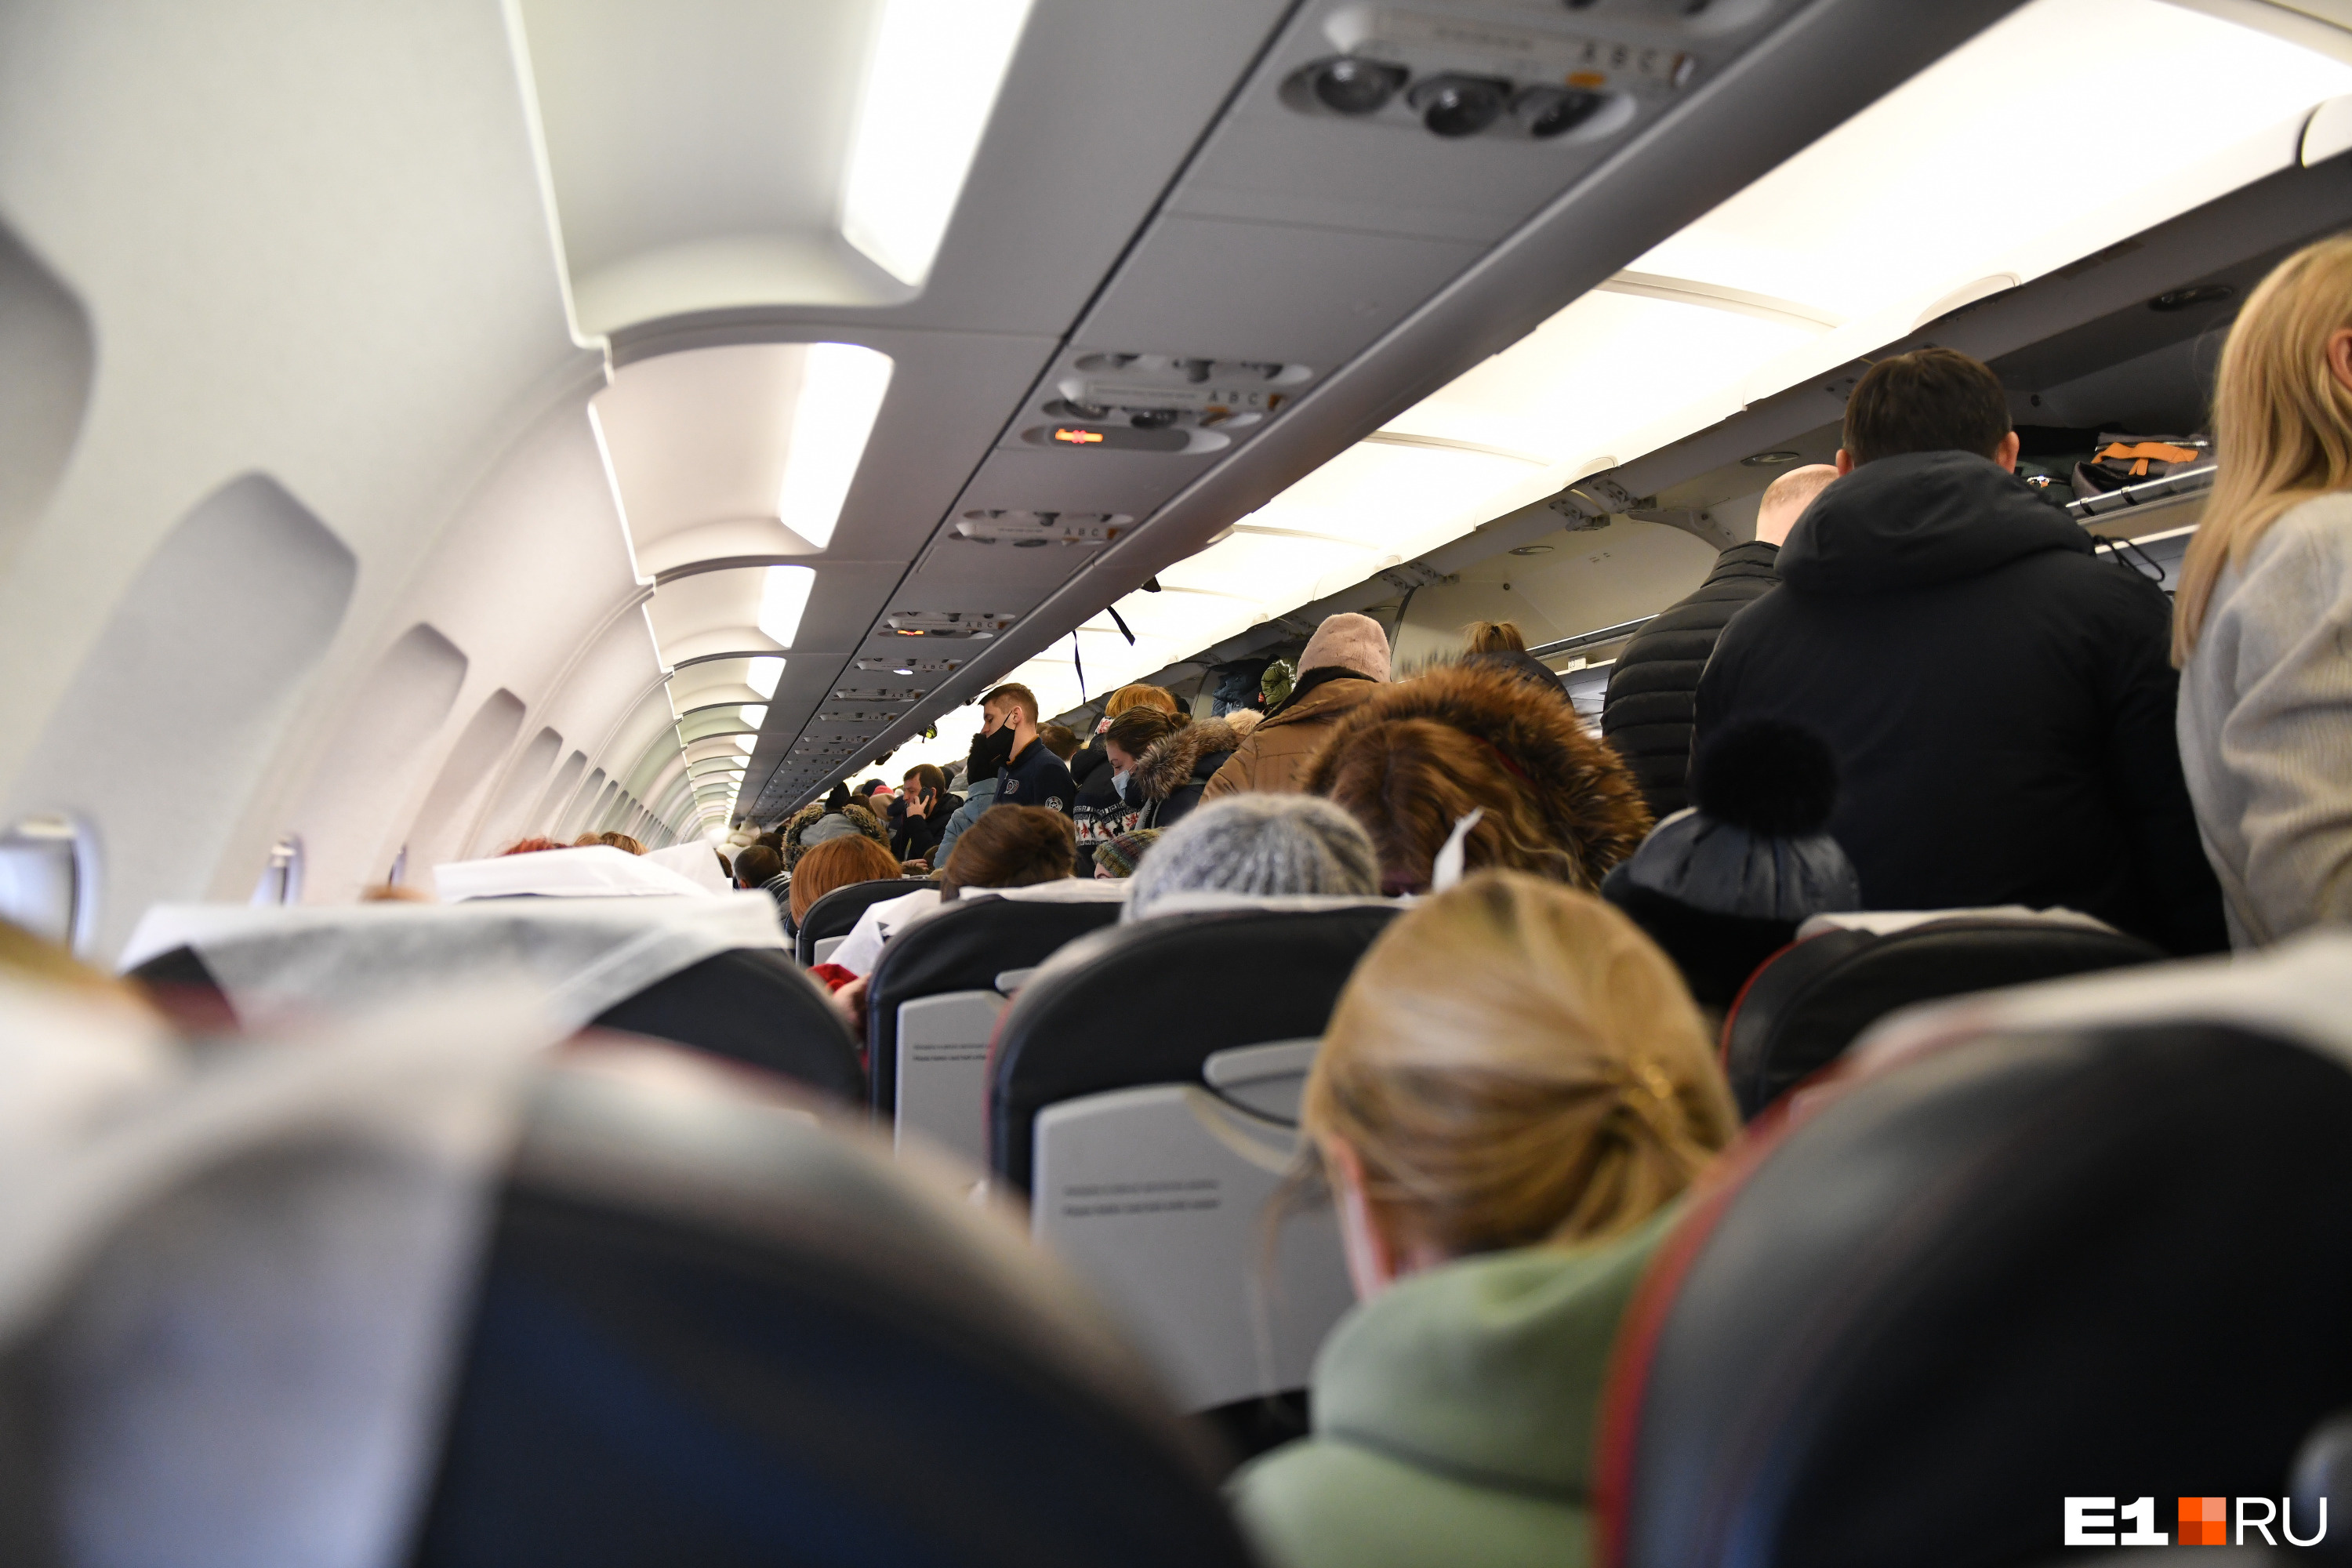 В самолете, вылетевшем из Екатеринбурга, умер пассажир. Рейс срочно посадили в Перми